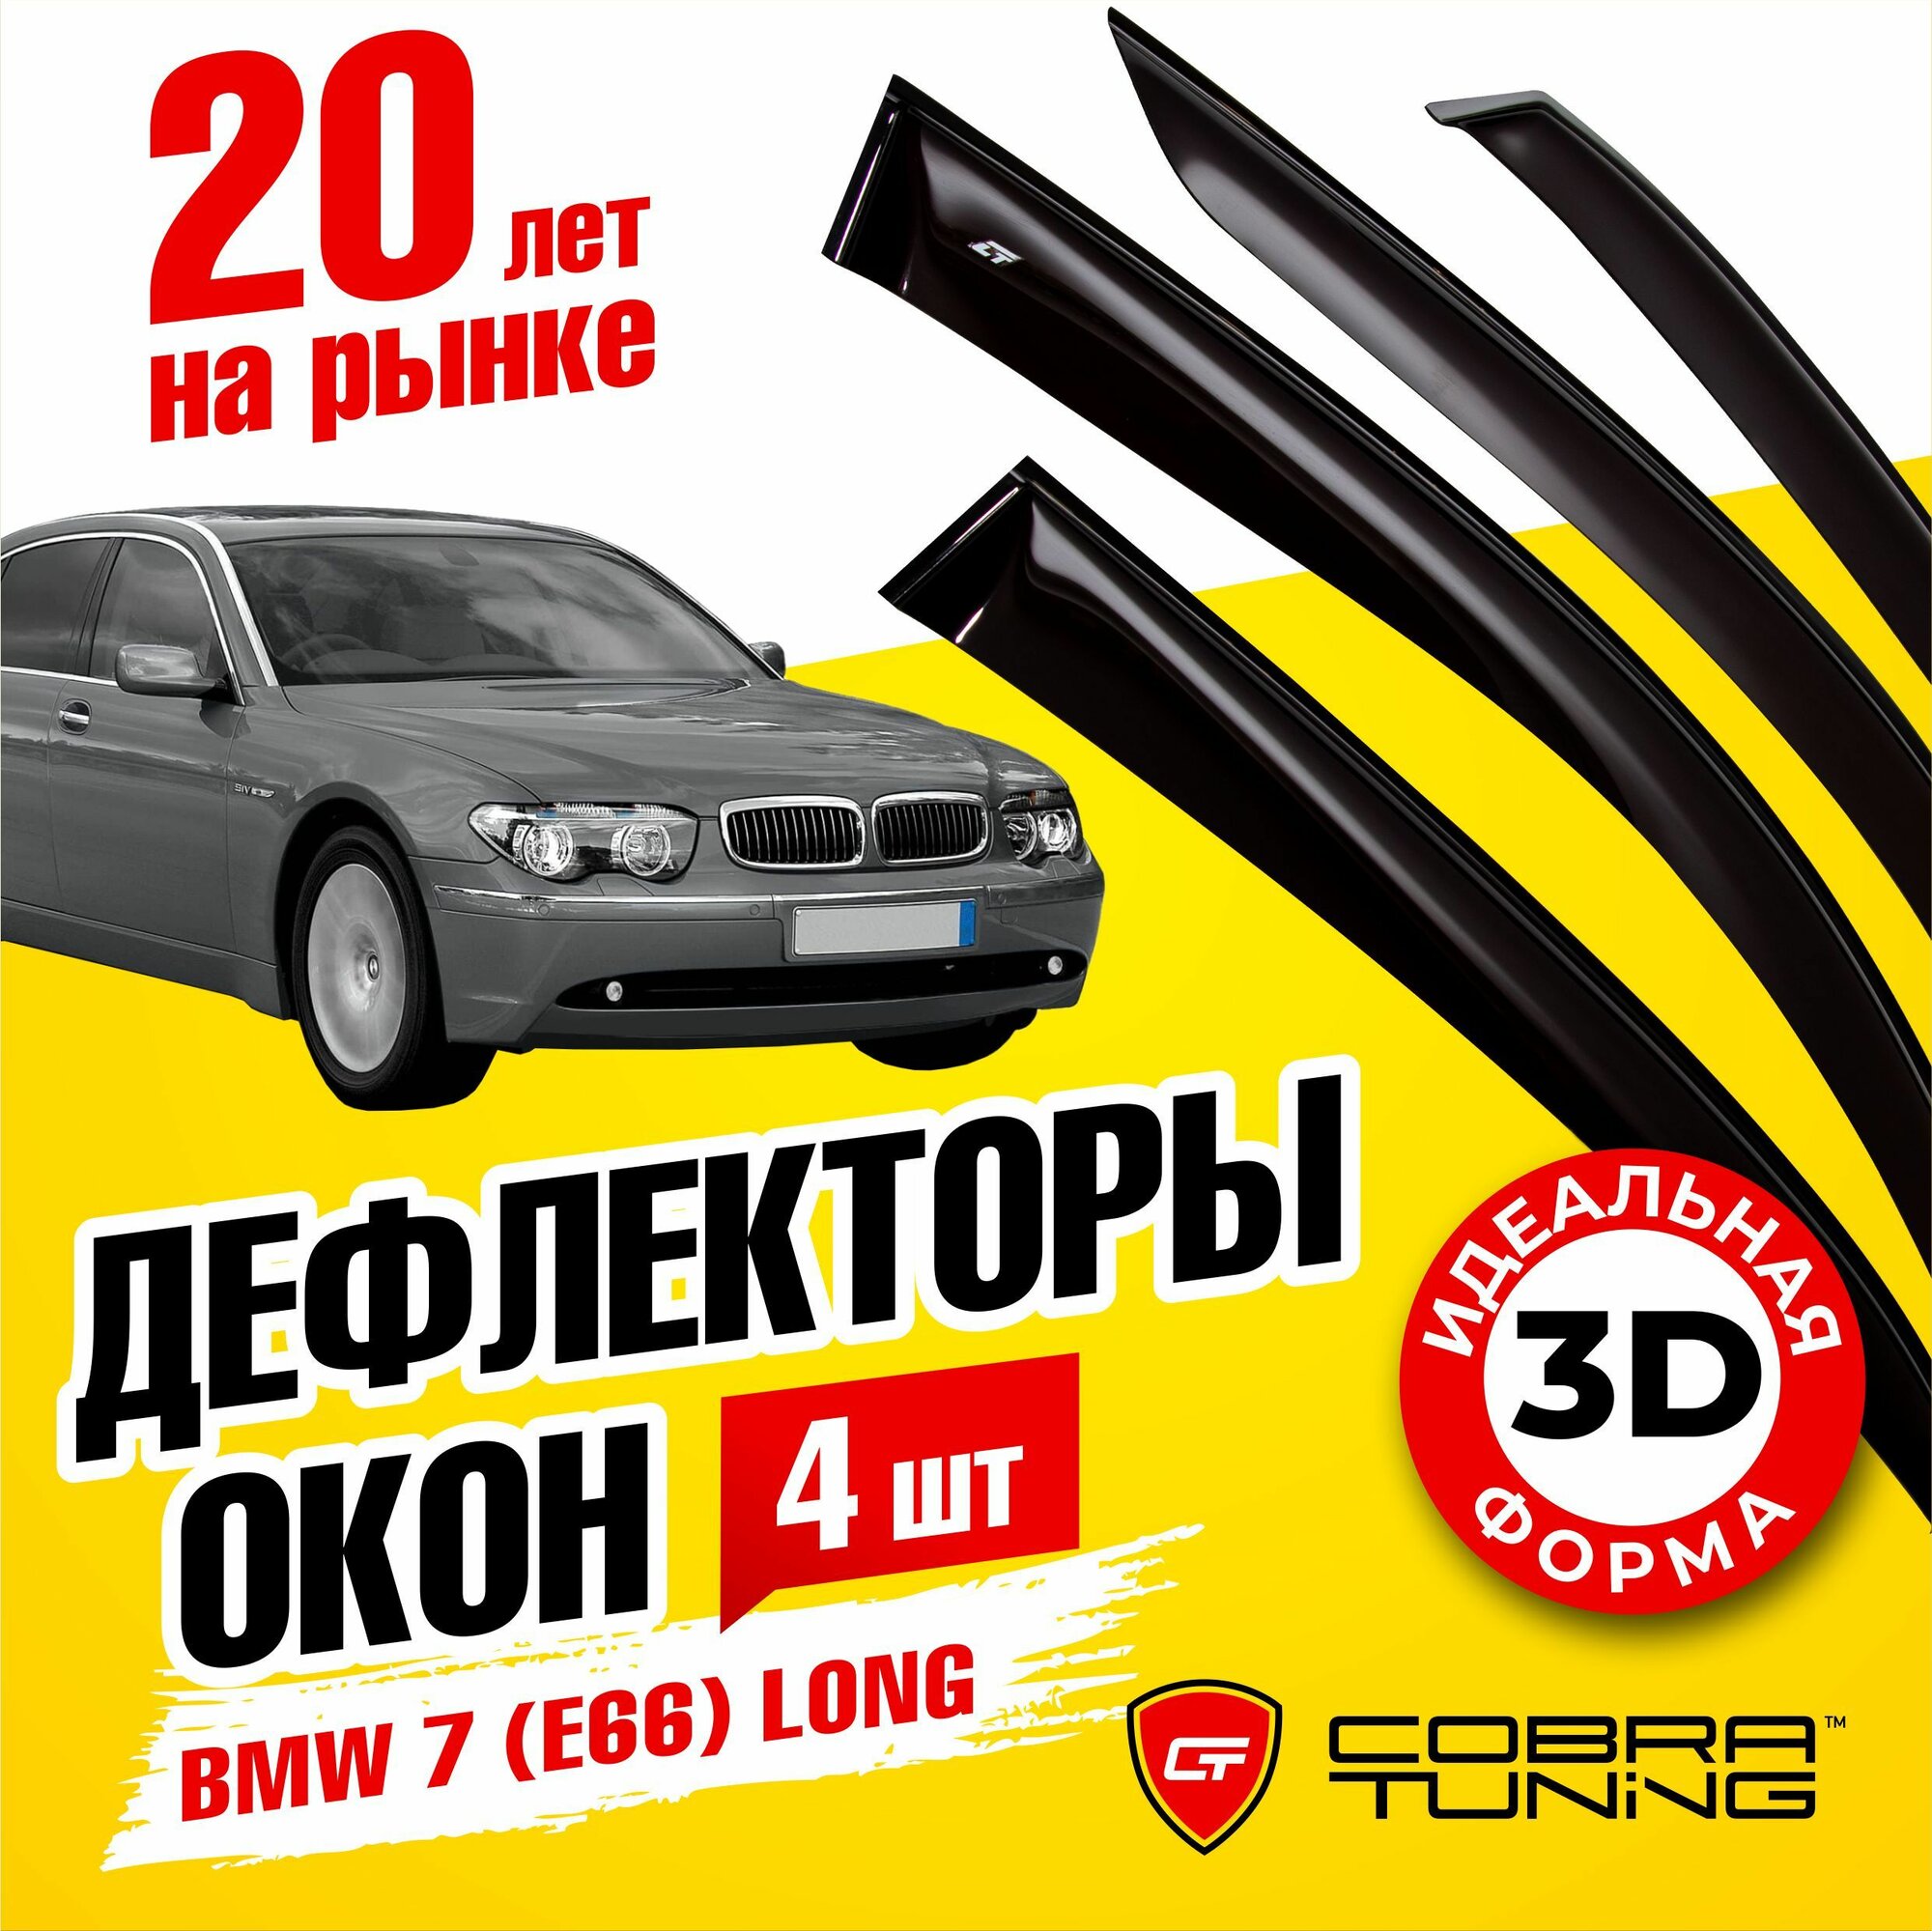 Дефлекторы боковых окон для BMW (БМВ) 7 седан (E66) Long 2001-2008, ветровики на двери автомобиля, Cobra Tuning